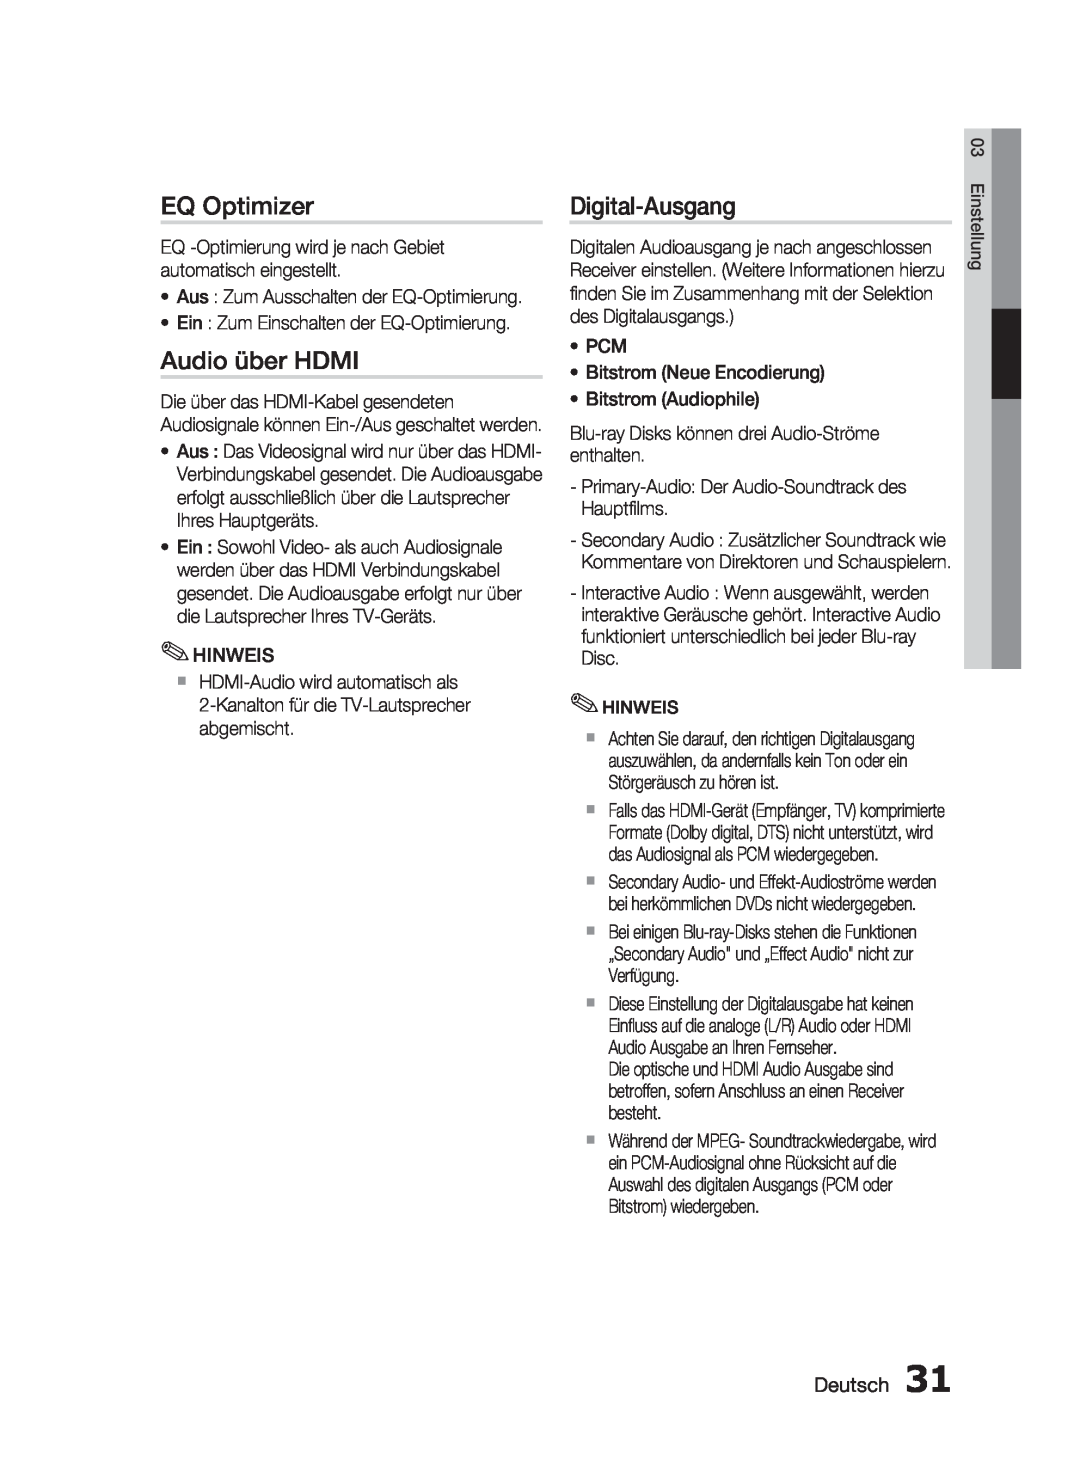 Samsung HT-C6200/XEF manual EQ Optimizer, Audio über HDMI, Digital-Ausgang, Deutsch 